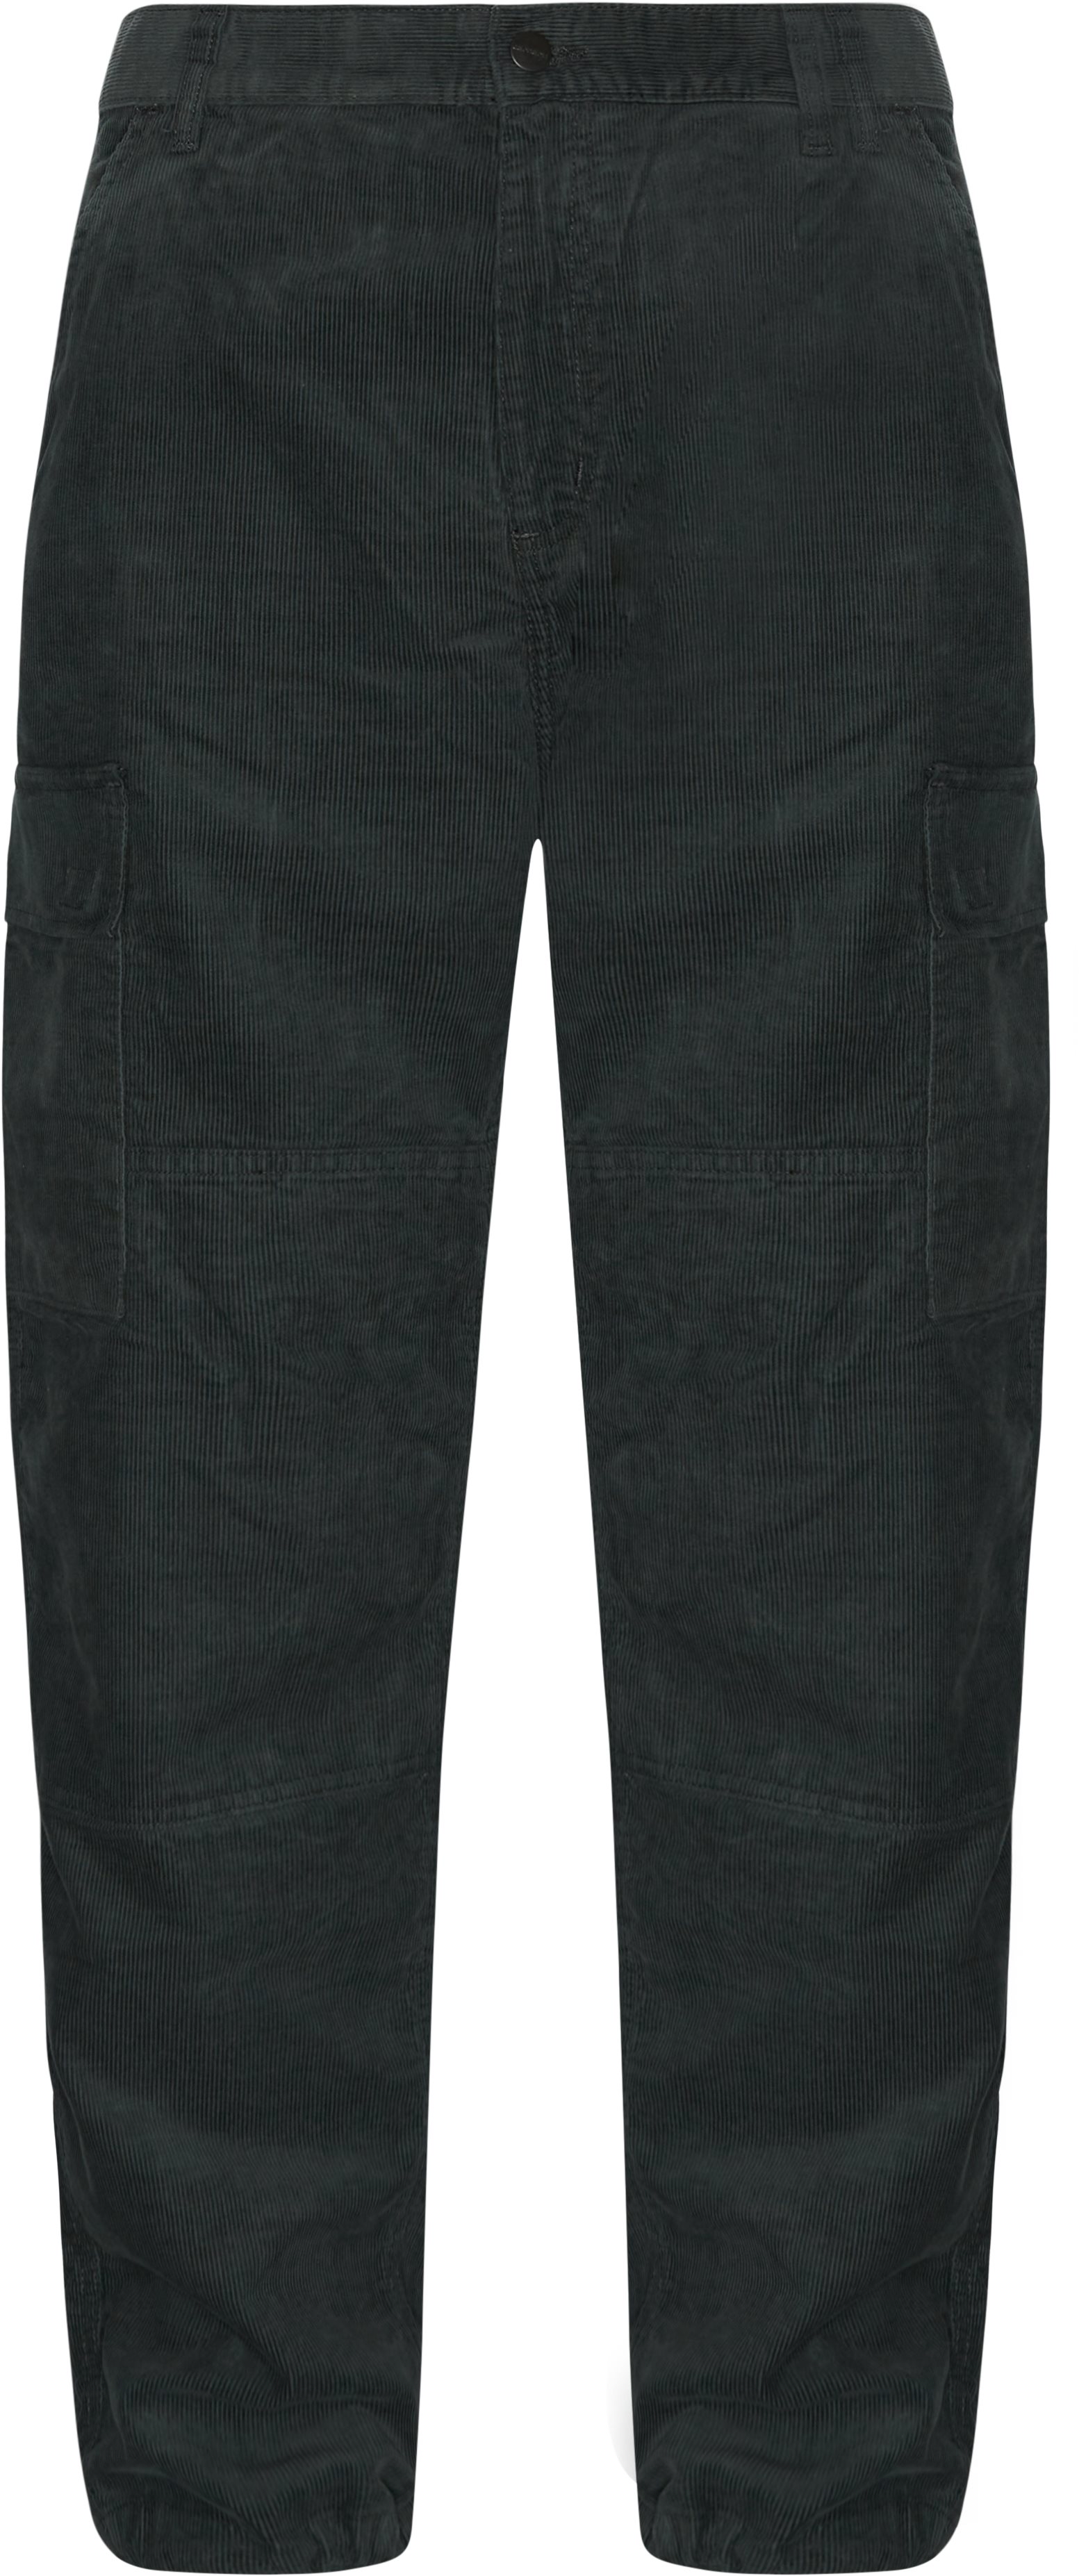 I029795 Cargo Pants - Bukser - Loose fit - Grøn